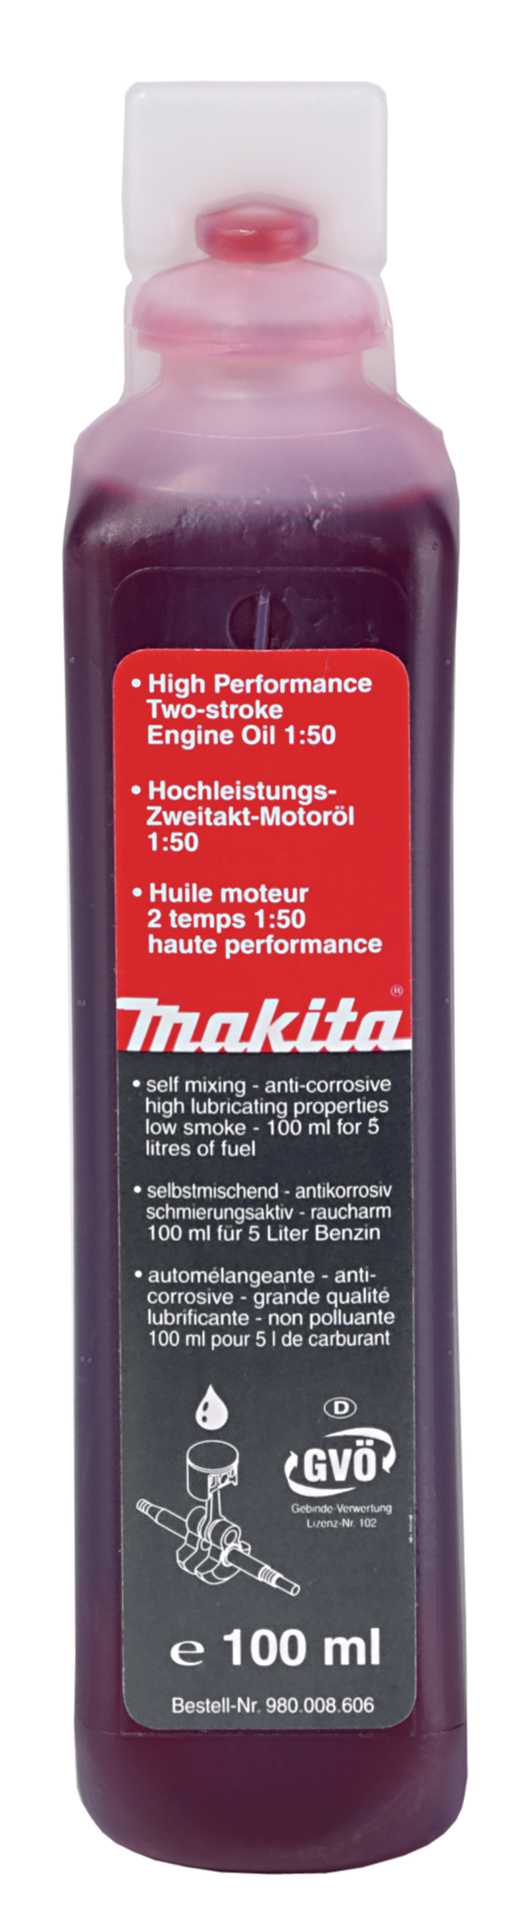 Makita Werkzeug GmbH Hochleistungs-2-Takt-Motorenöl